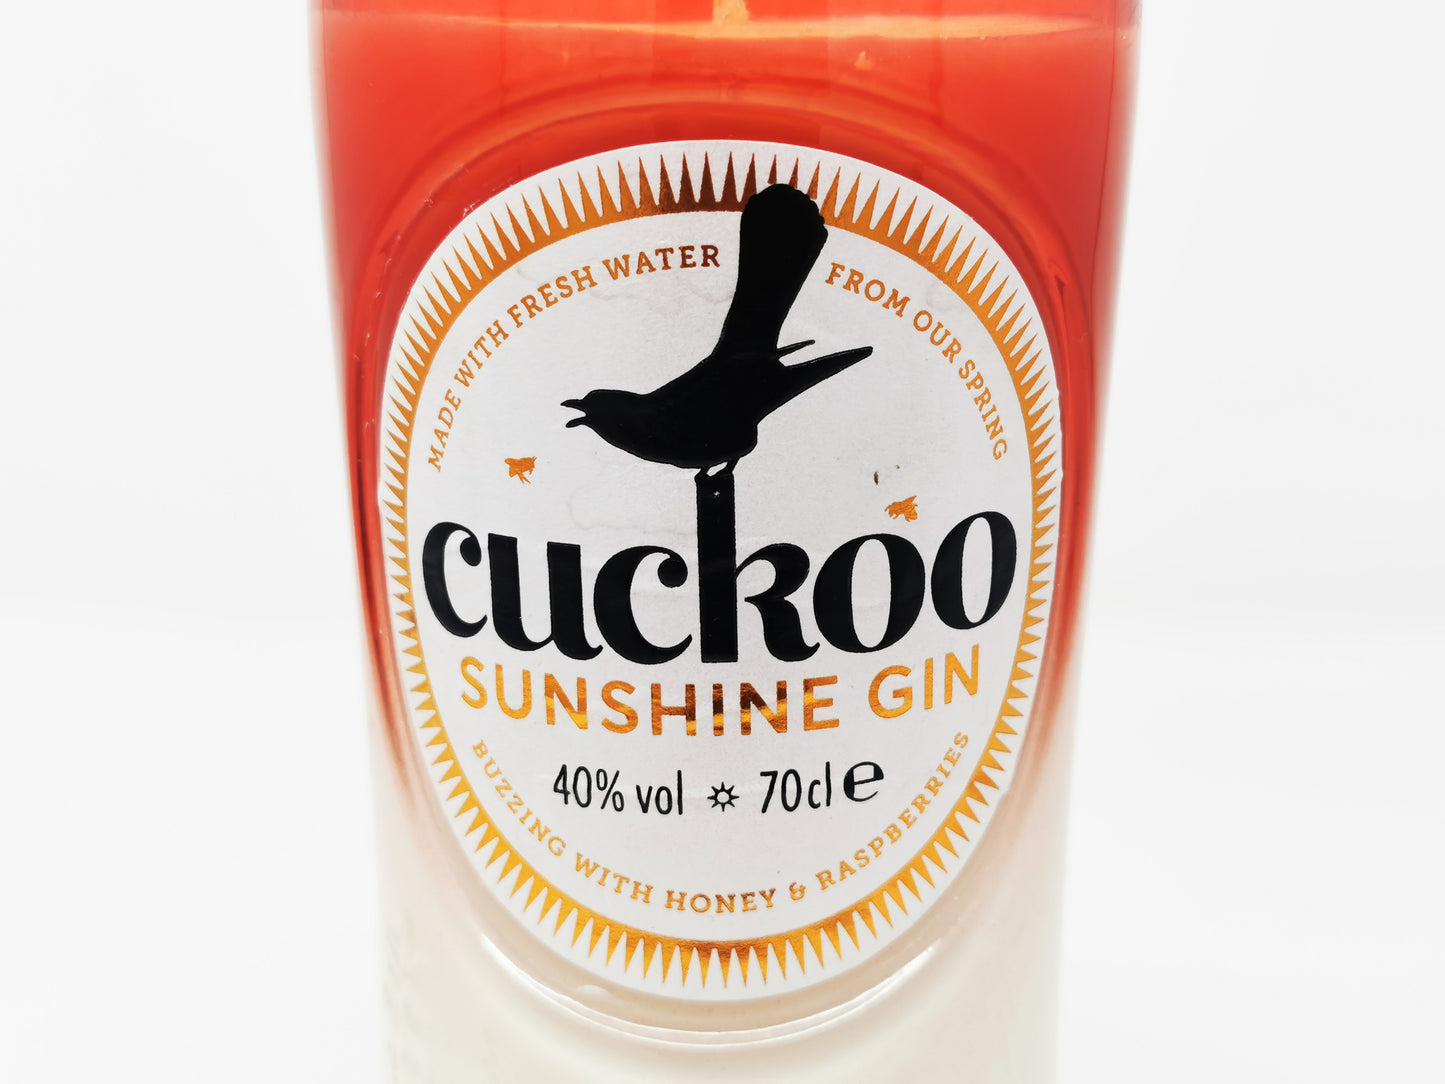 Cuckoo Sunshine Gin Bottle Candle Gin Bottle Candles Adhock Homeware